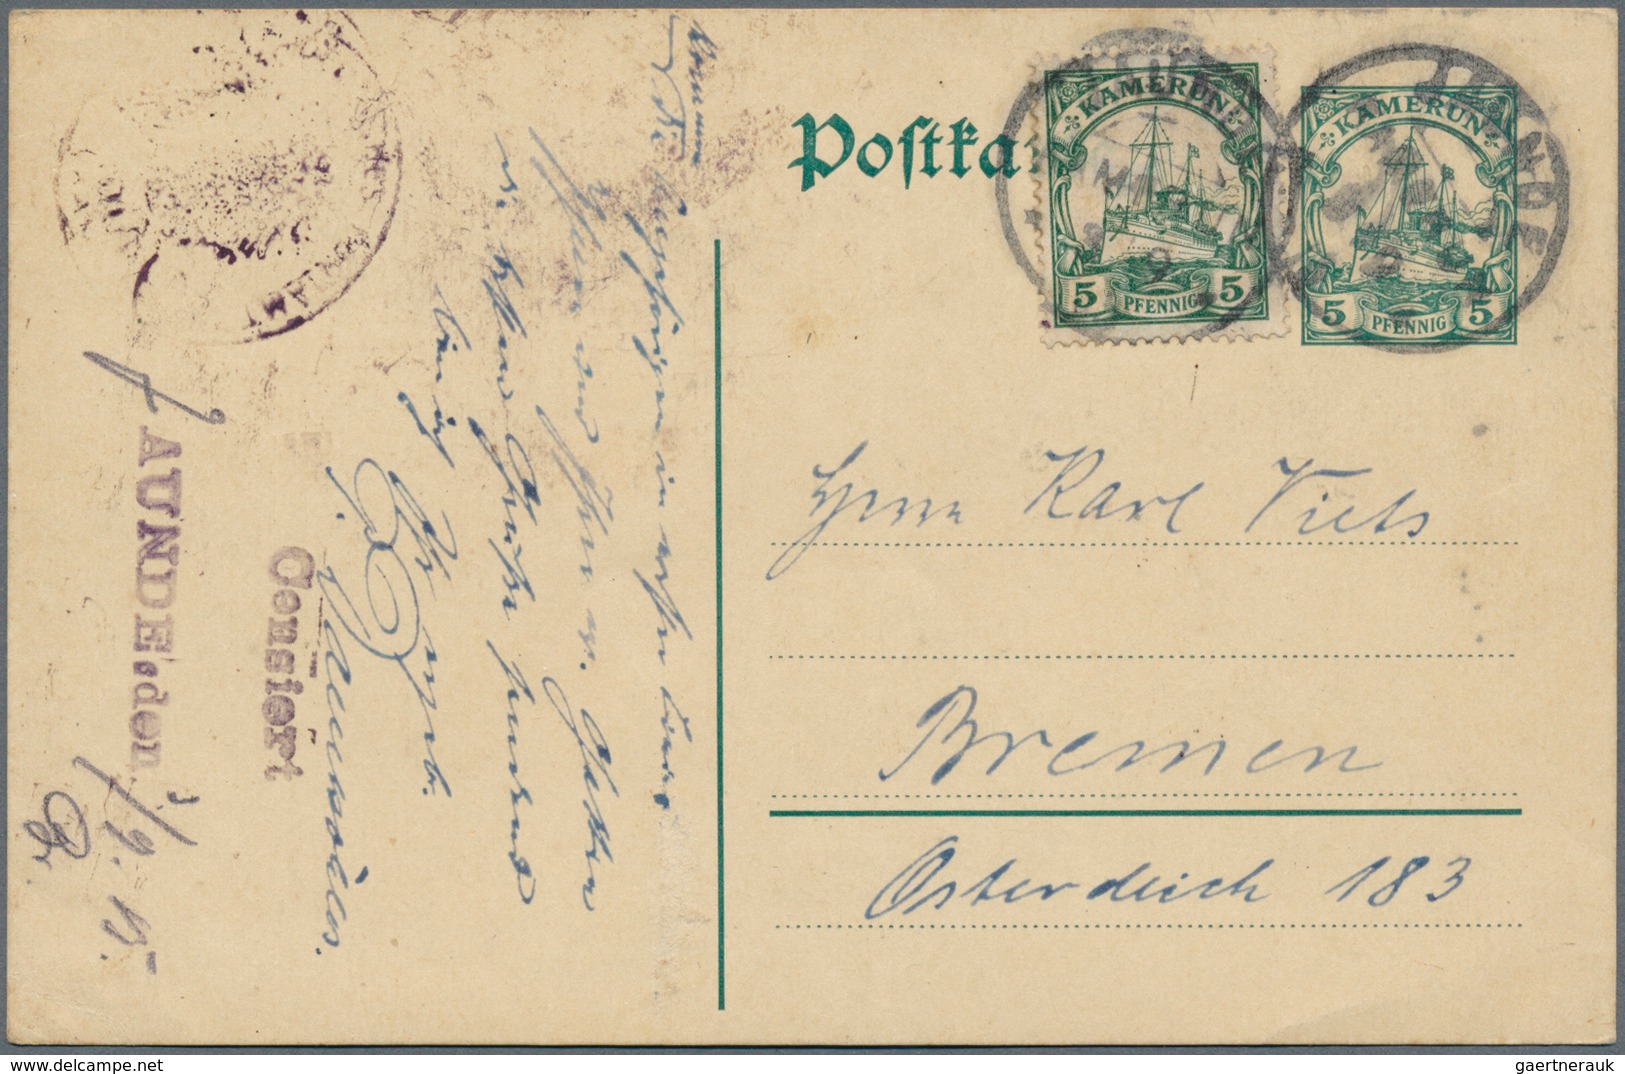 Deutsche Kolonien - Kamerun - Besonderheiten: 1915 (3.9.), Violetter Gummi-Typensatz-Stempel "Censie - Cameroun